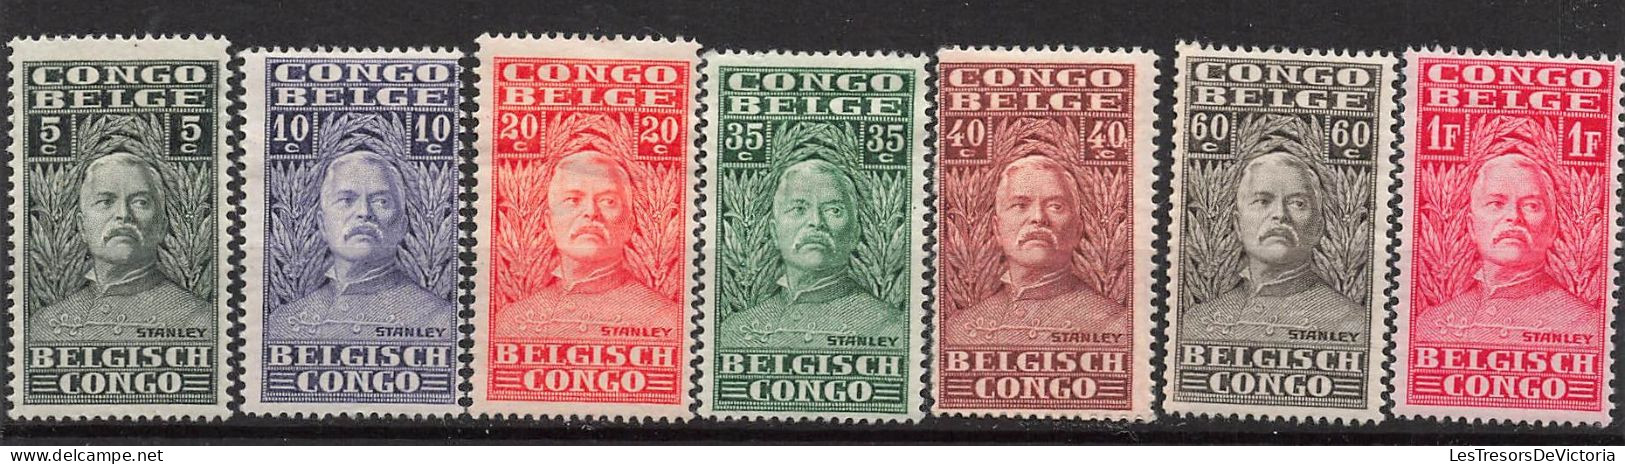 Timbre - Congo Belge - 1928 - COB135/49* - Explorateur Henri Morton Stanley - Cote 50 - Neufs